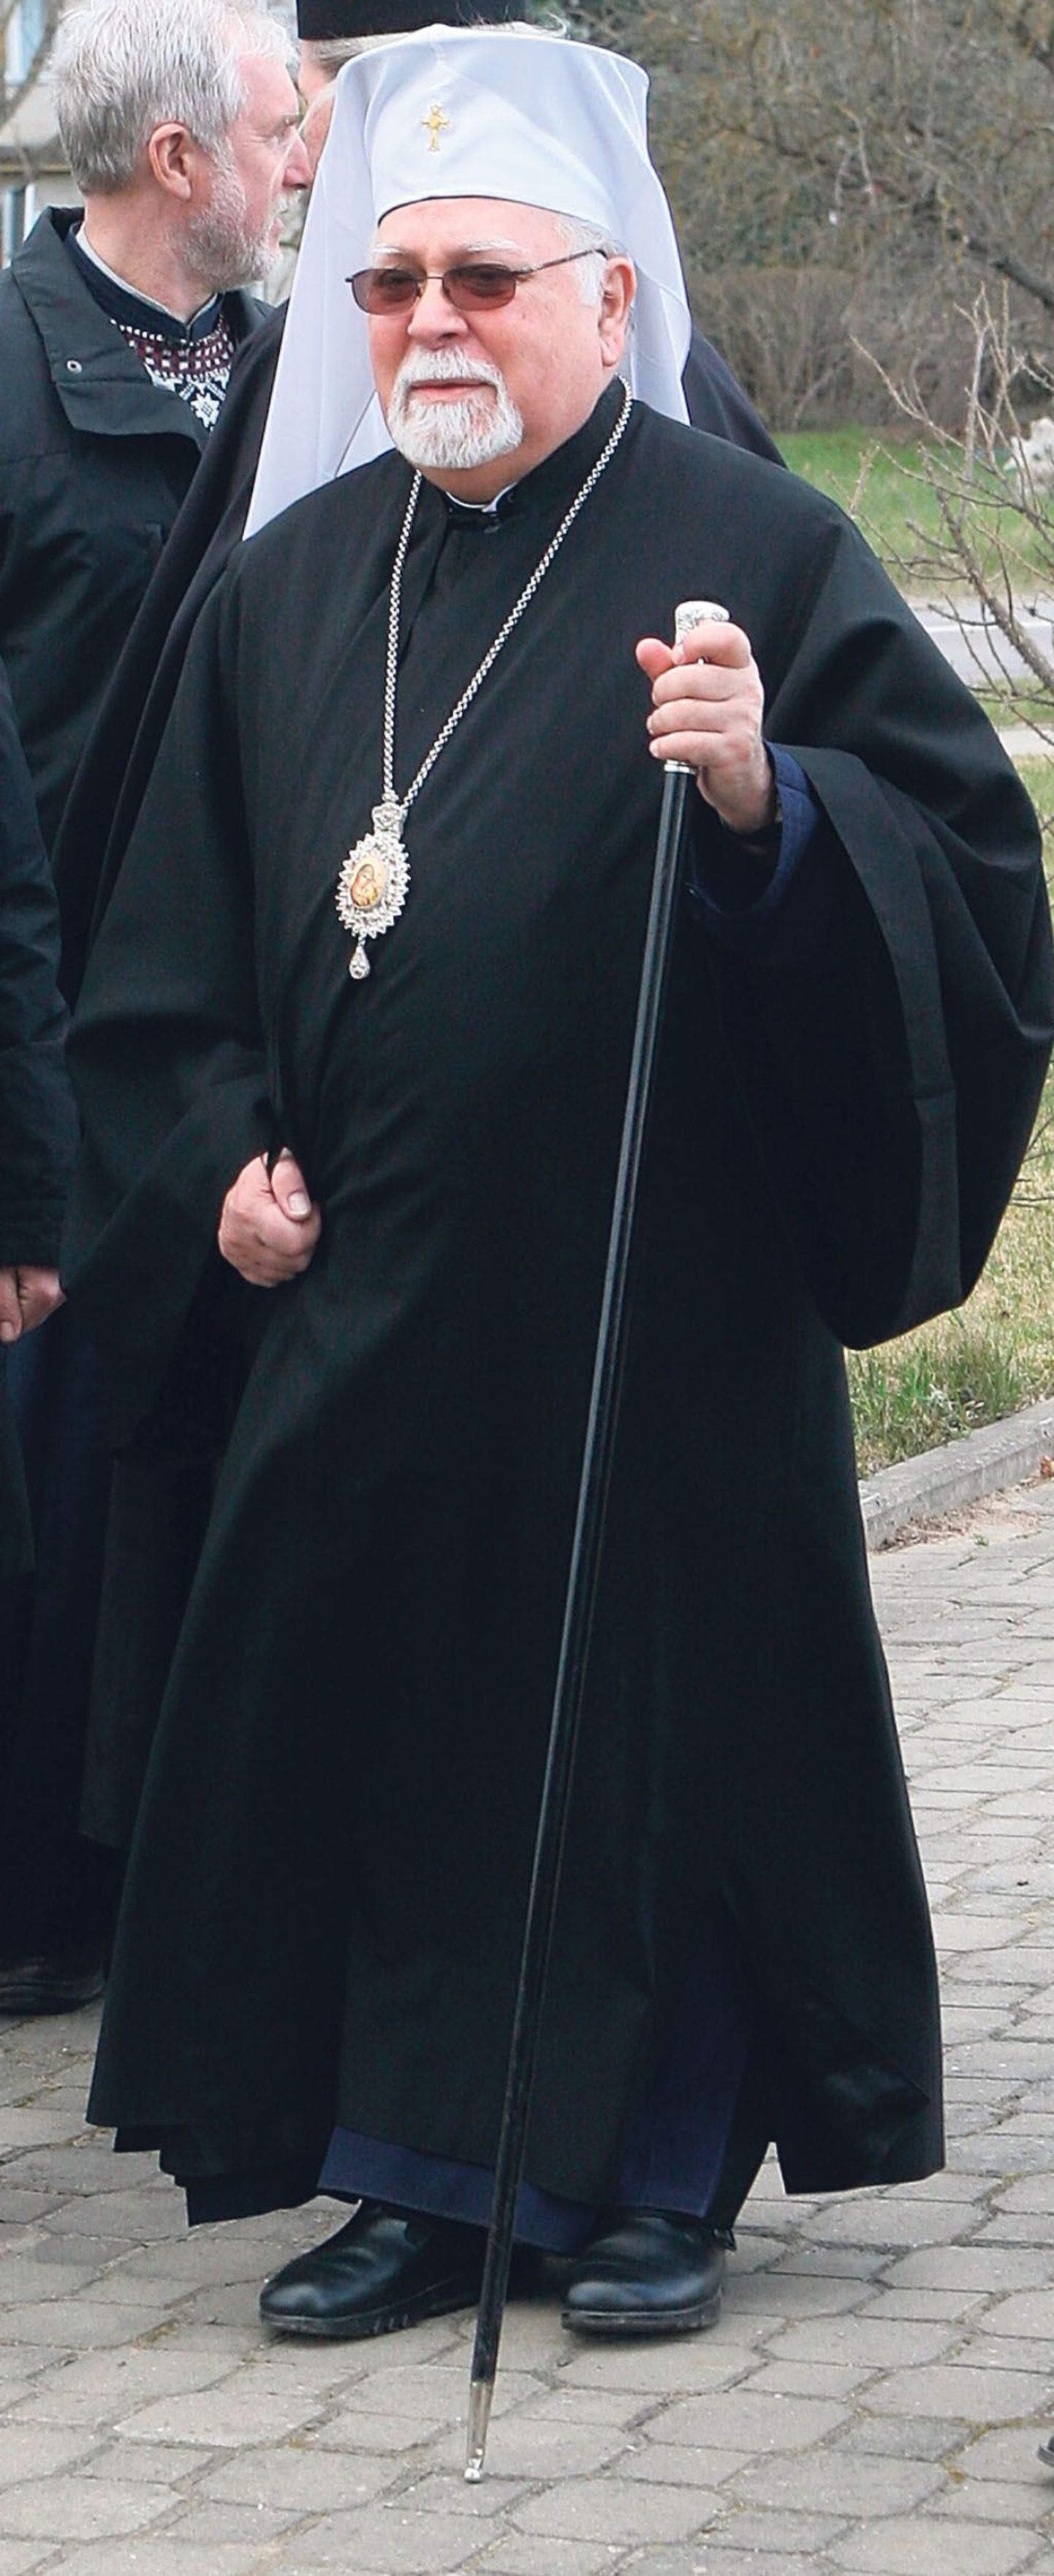 Metropoliit Stefanus, kes viibis Pärnus patriarh Bartolomeuse visiidi eel, märkis, et patriarhi visiit Pärnusse näitab austust siinse tegevuse suhtes.